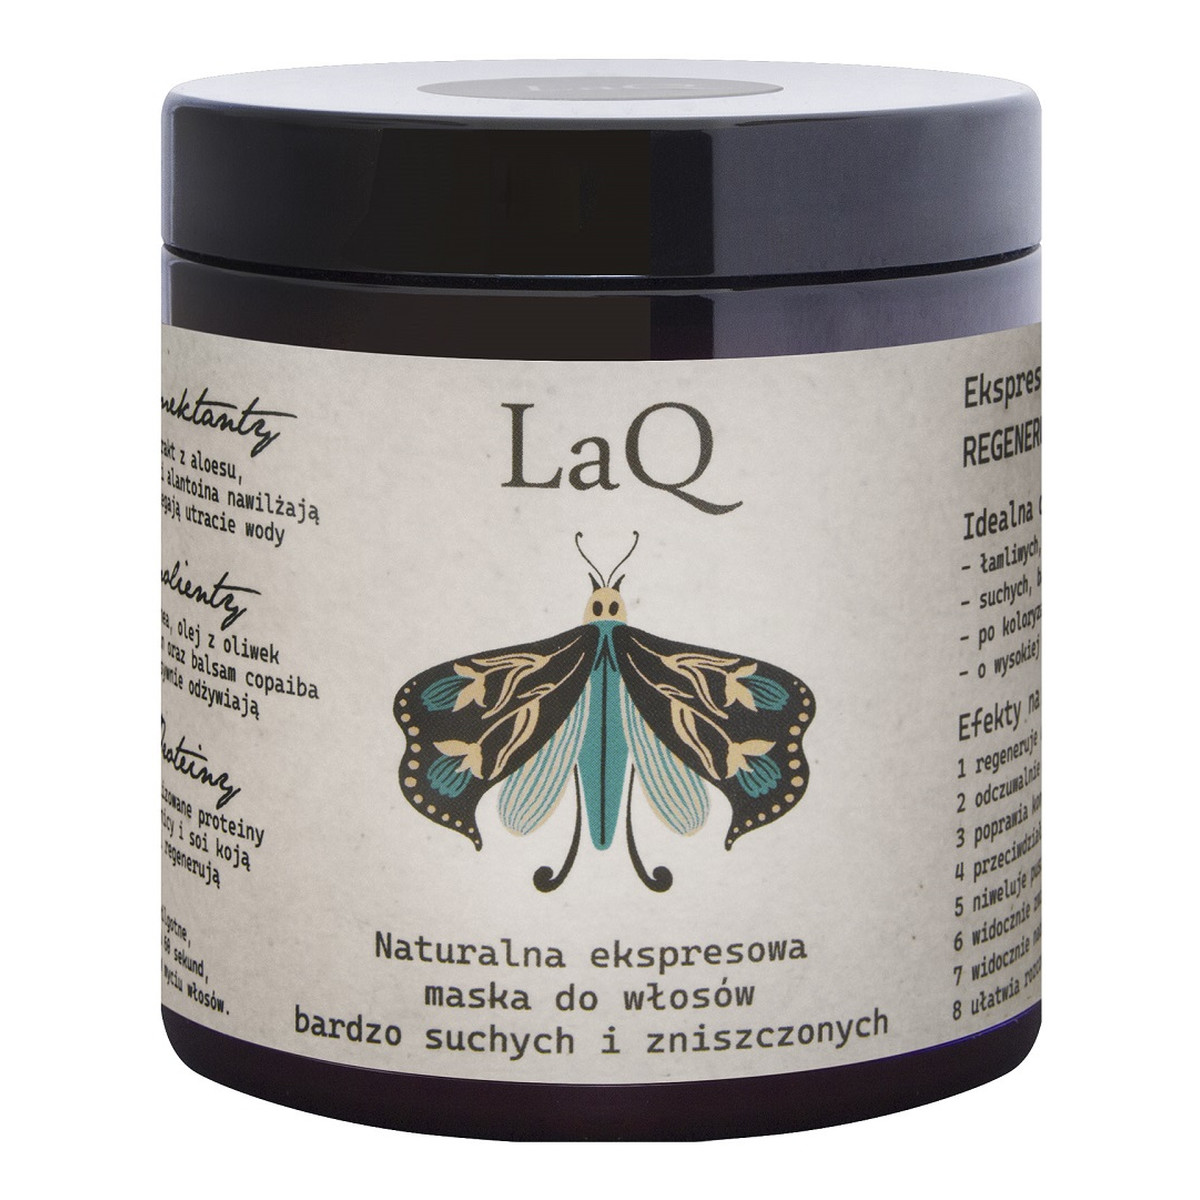 Laq Ekspresowa maska do włosów regenerująco-odżywcza 8w1 250ml